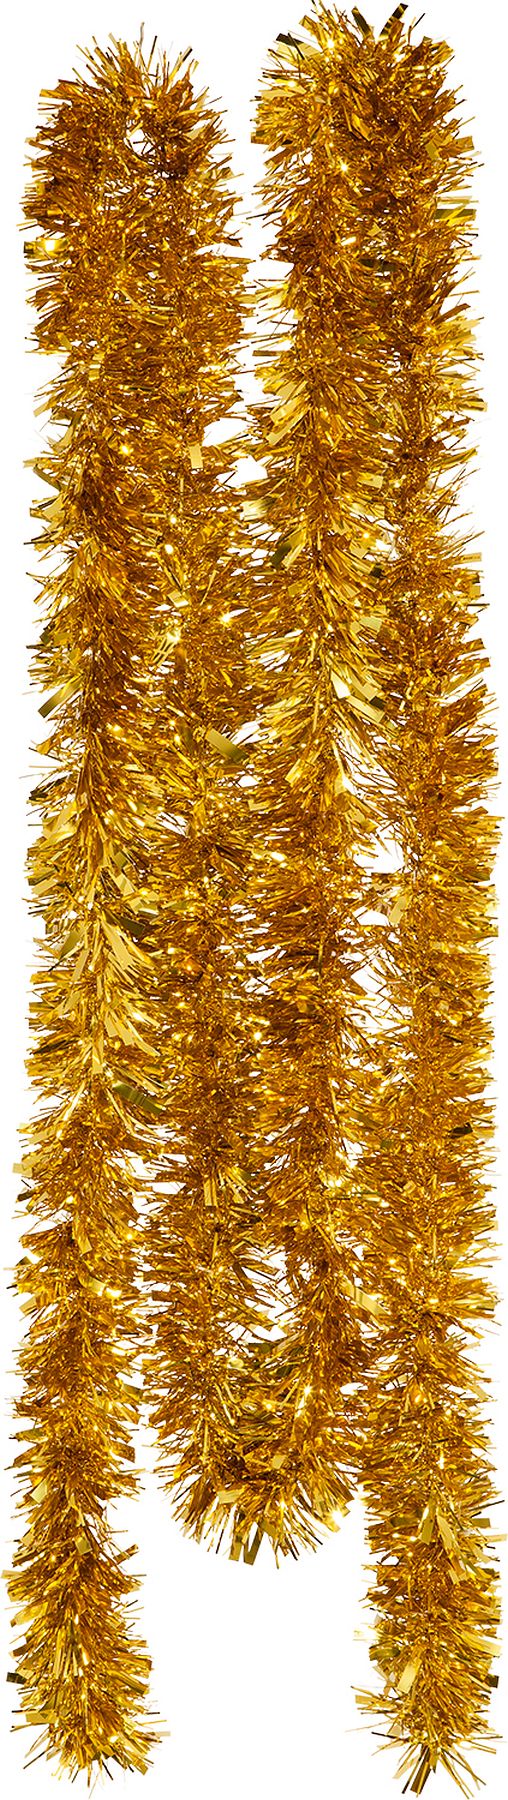 Foliengirlande, gold, 3m - Ø 10cm 